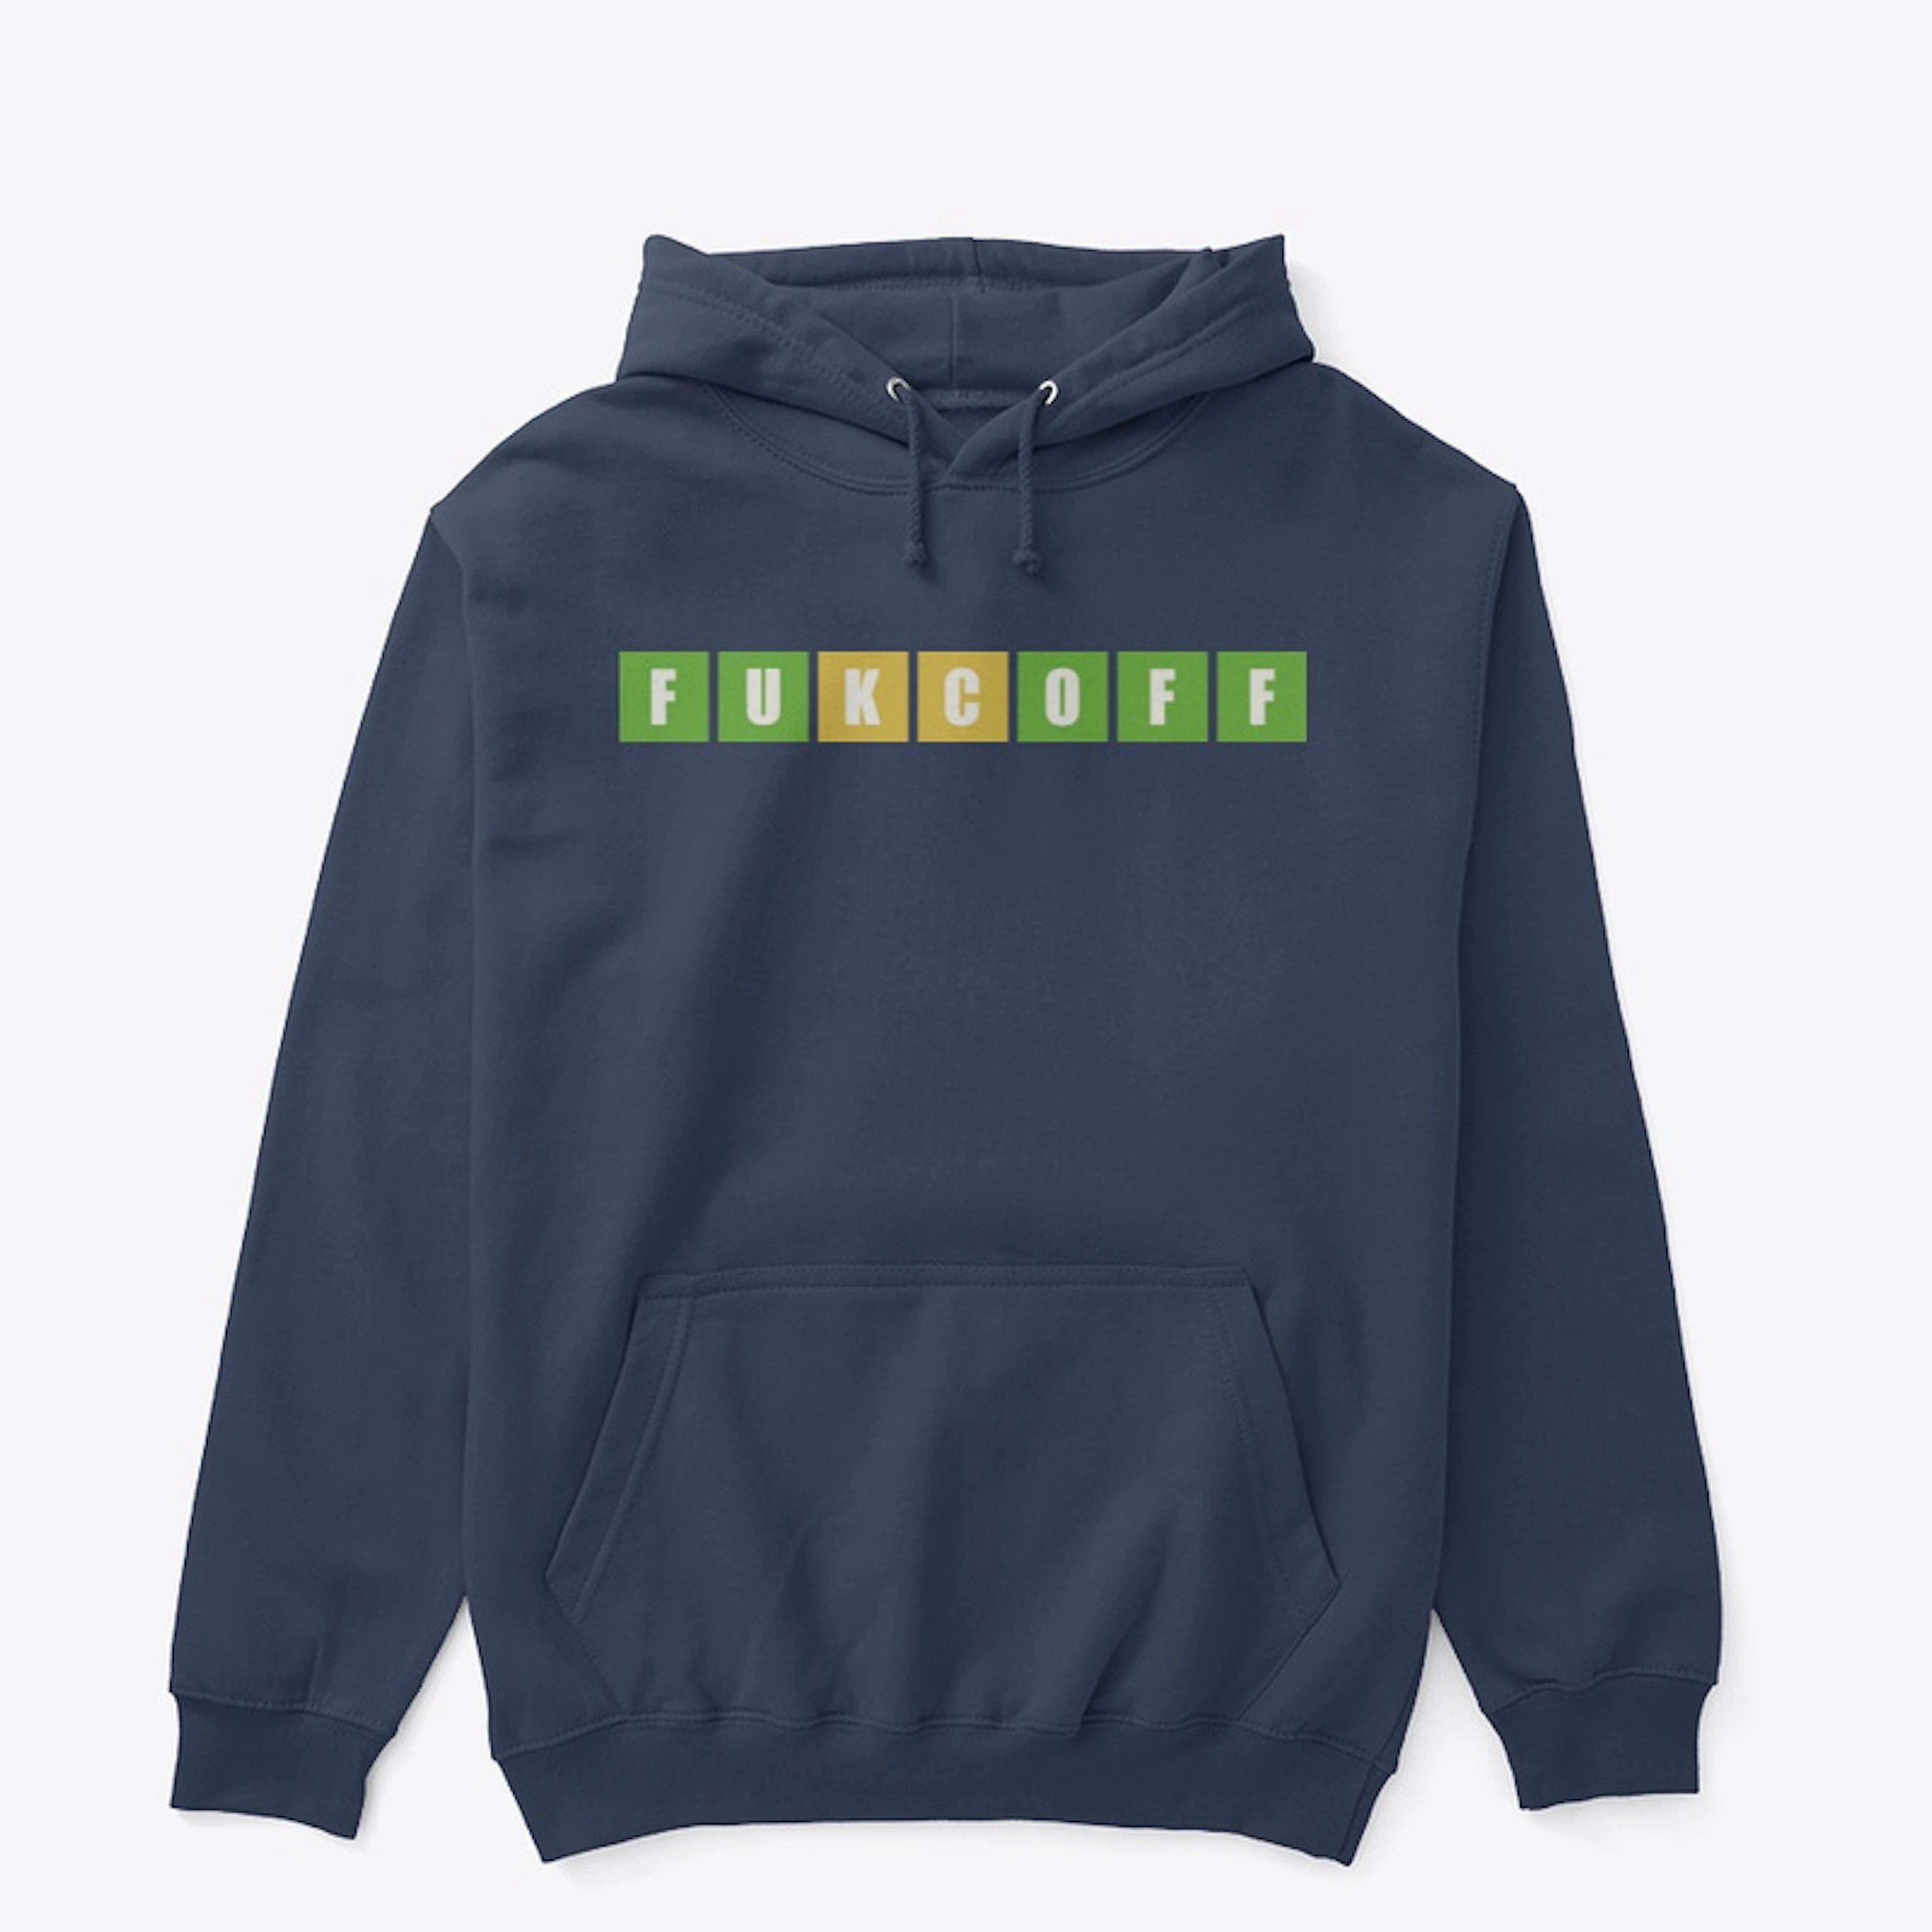 Adult FUKCOFF Wordle Sweatshirt